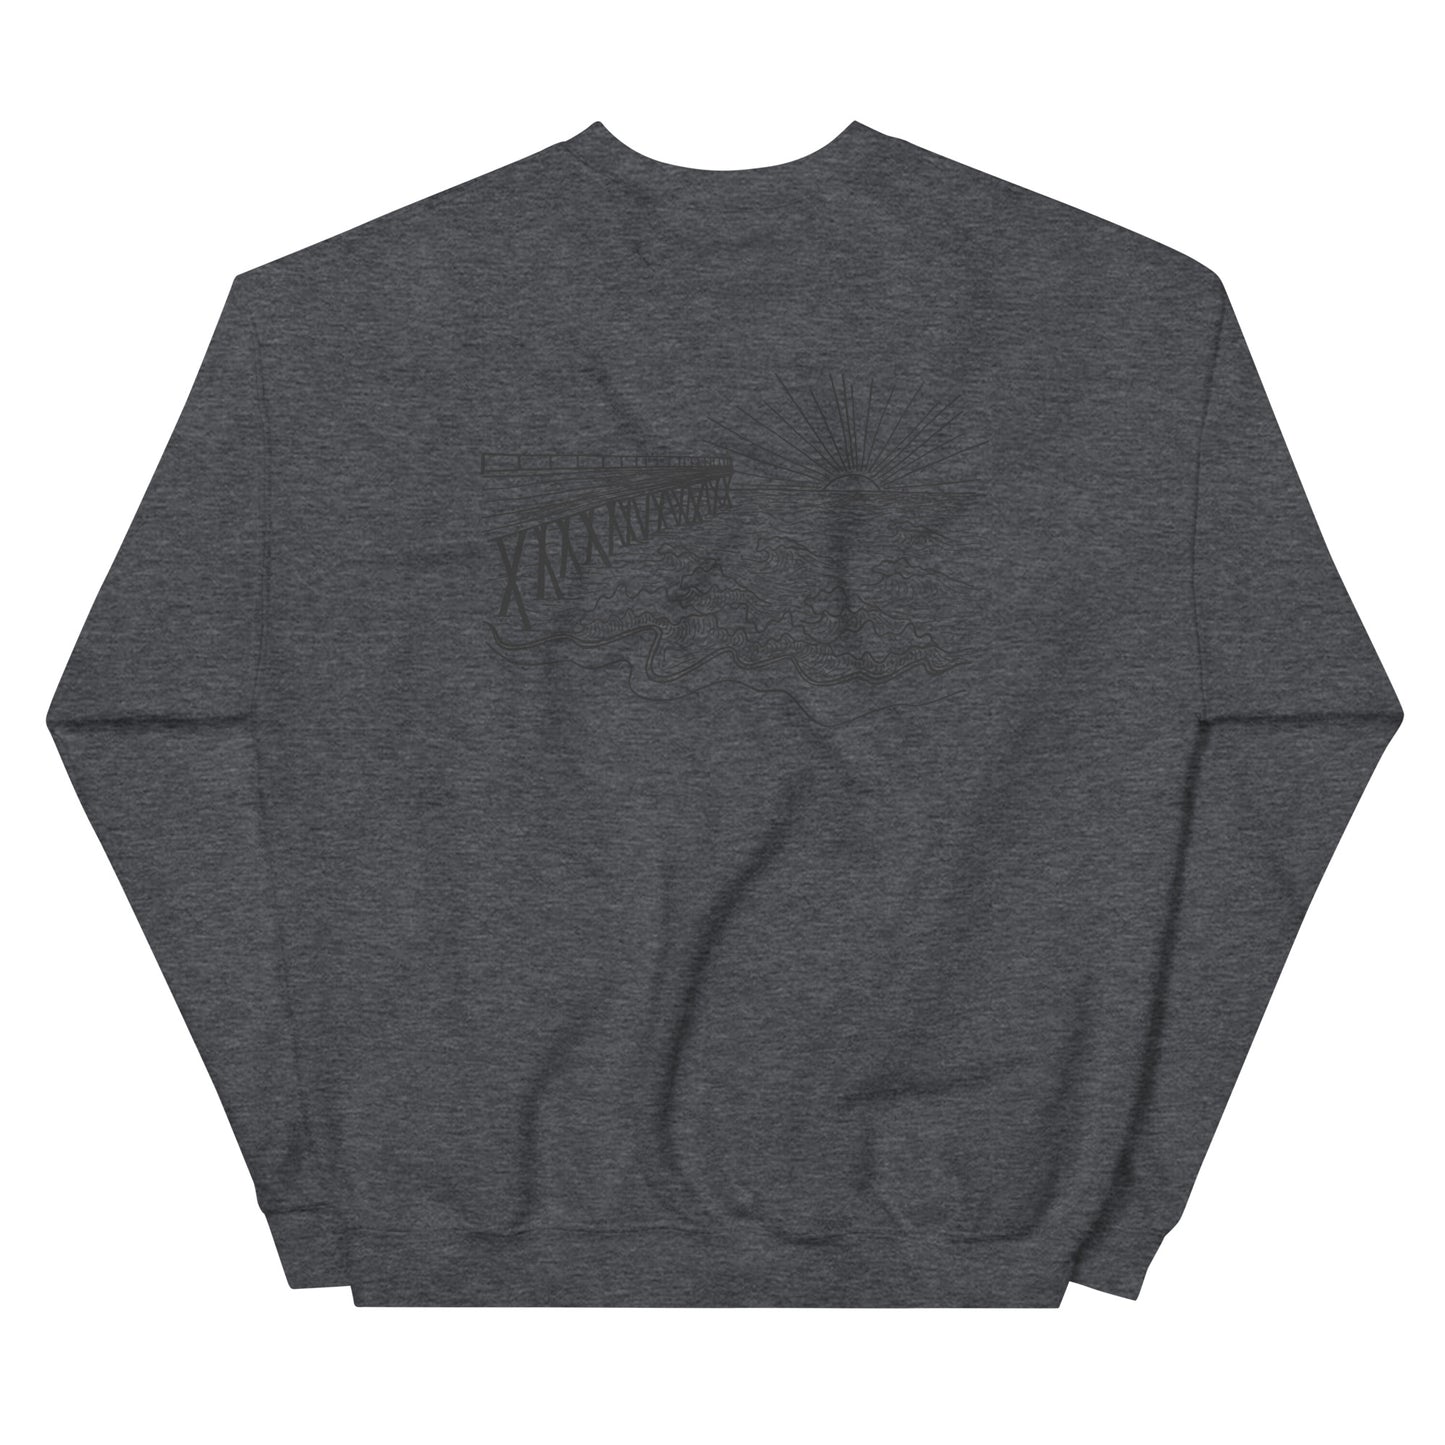 oceanfront sweatshirt (design on back)